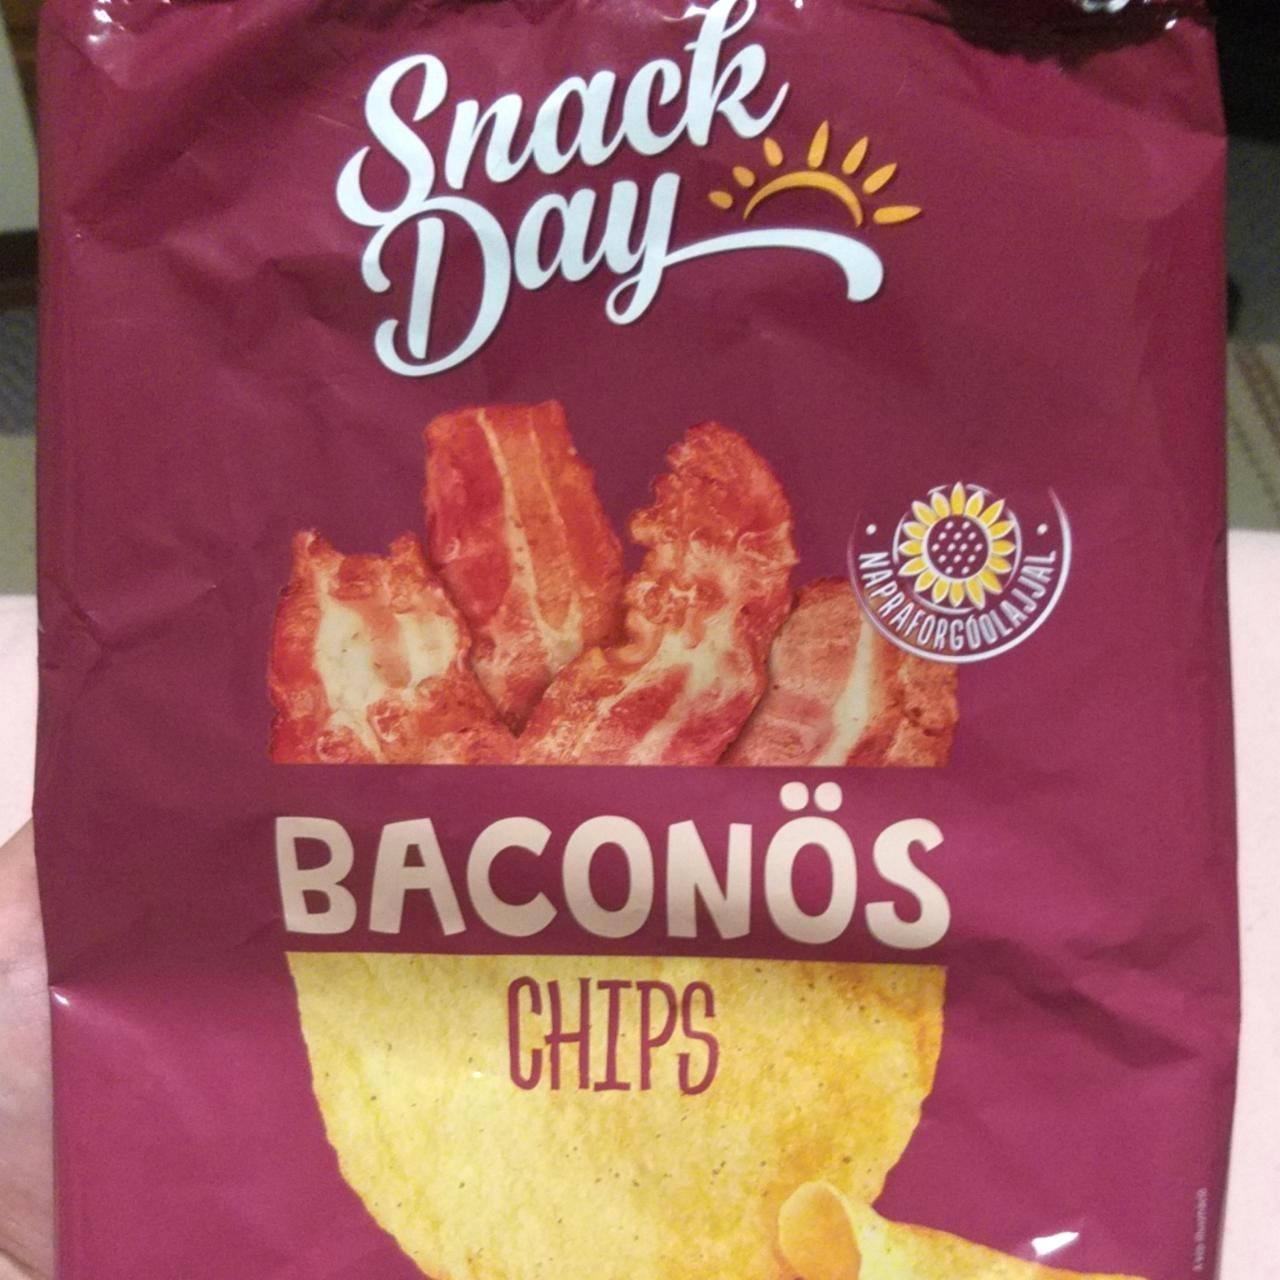 Képek - Baconös chips Snack Day